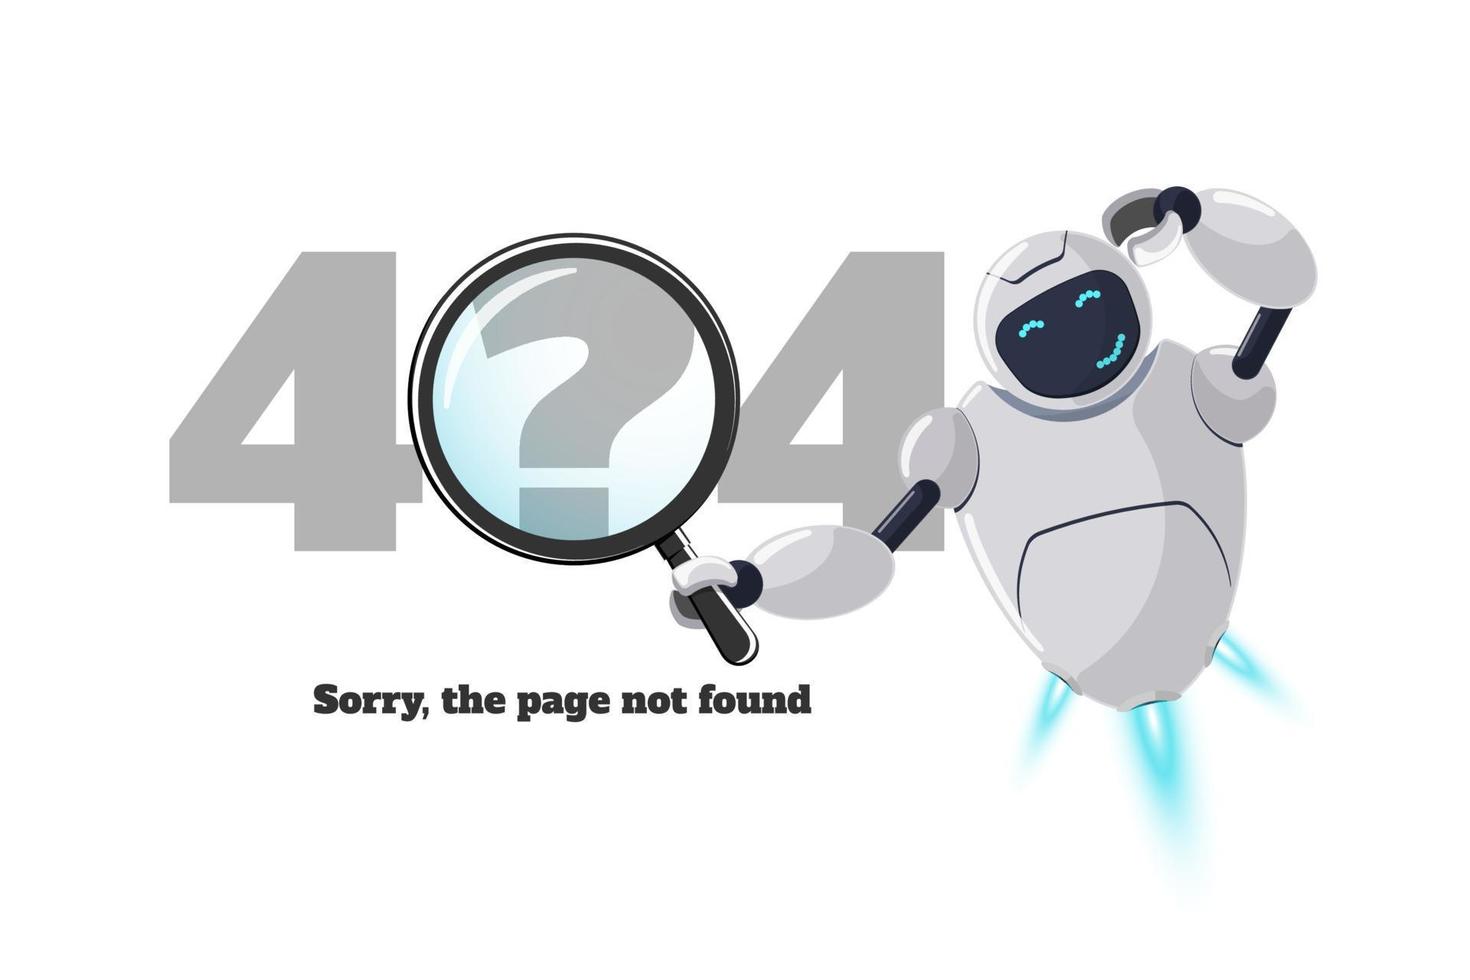 websitepagina niet gevonden fout 404. bezorgd robotkarakter met vergrootglas in de hand. sitecrash op technisch werk eps webontwerpsjabloon met chatbot-mascotte. cartoon online bot assistentie mislukt vector